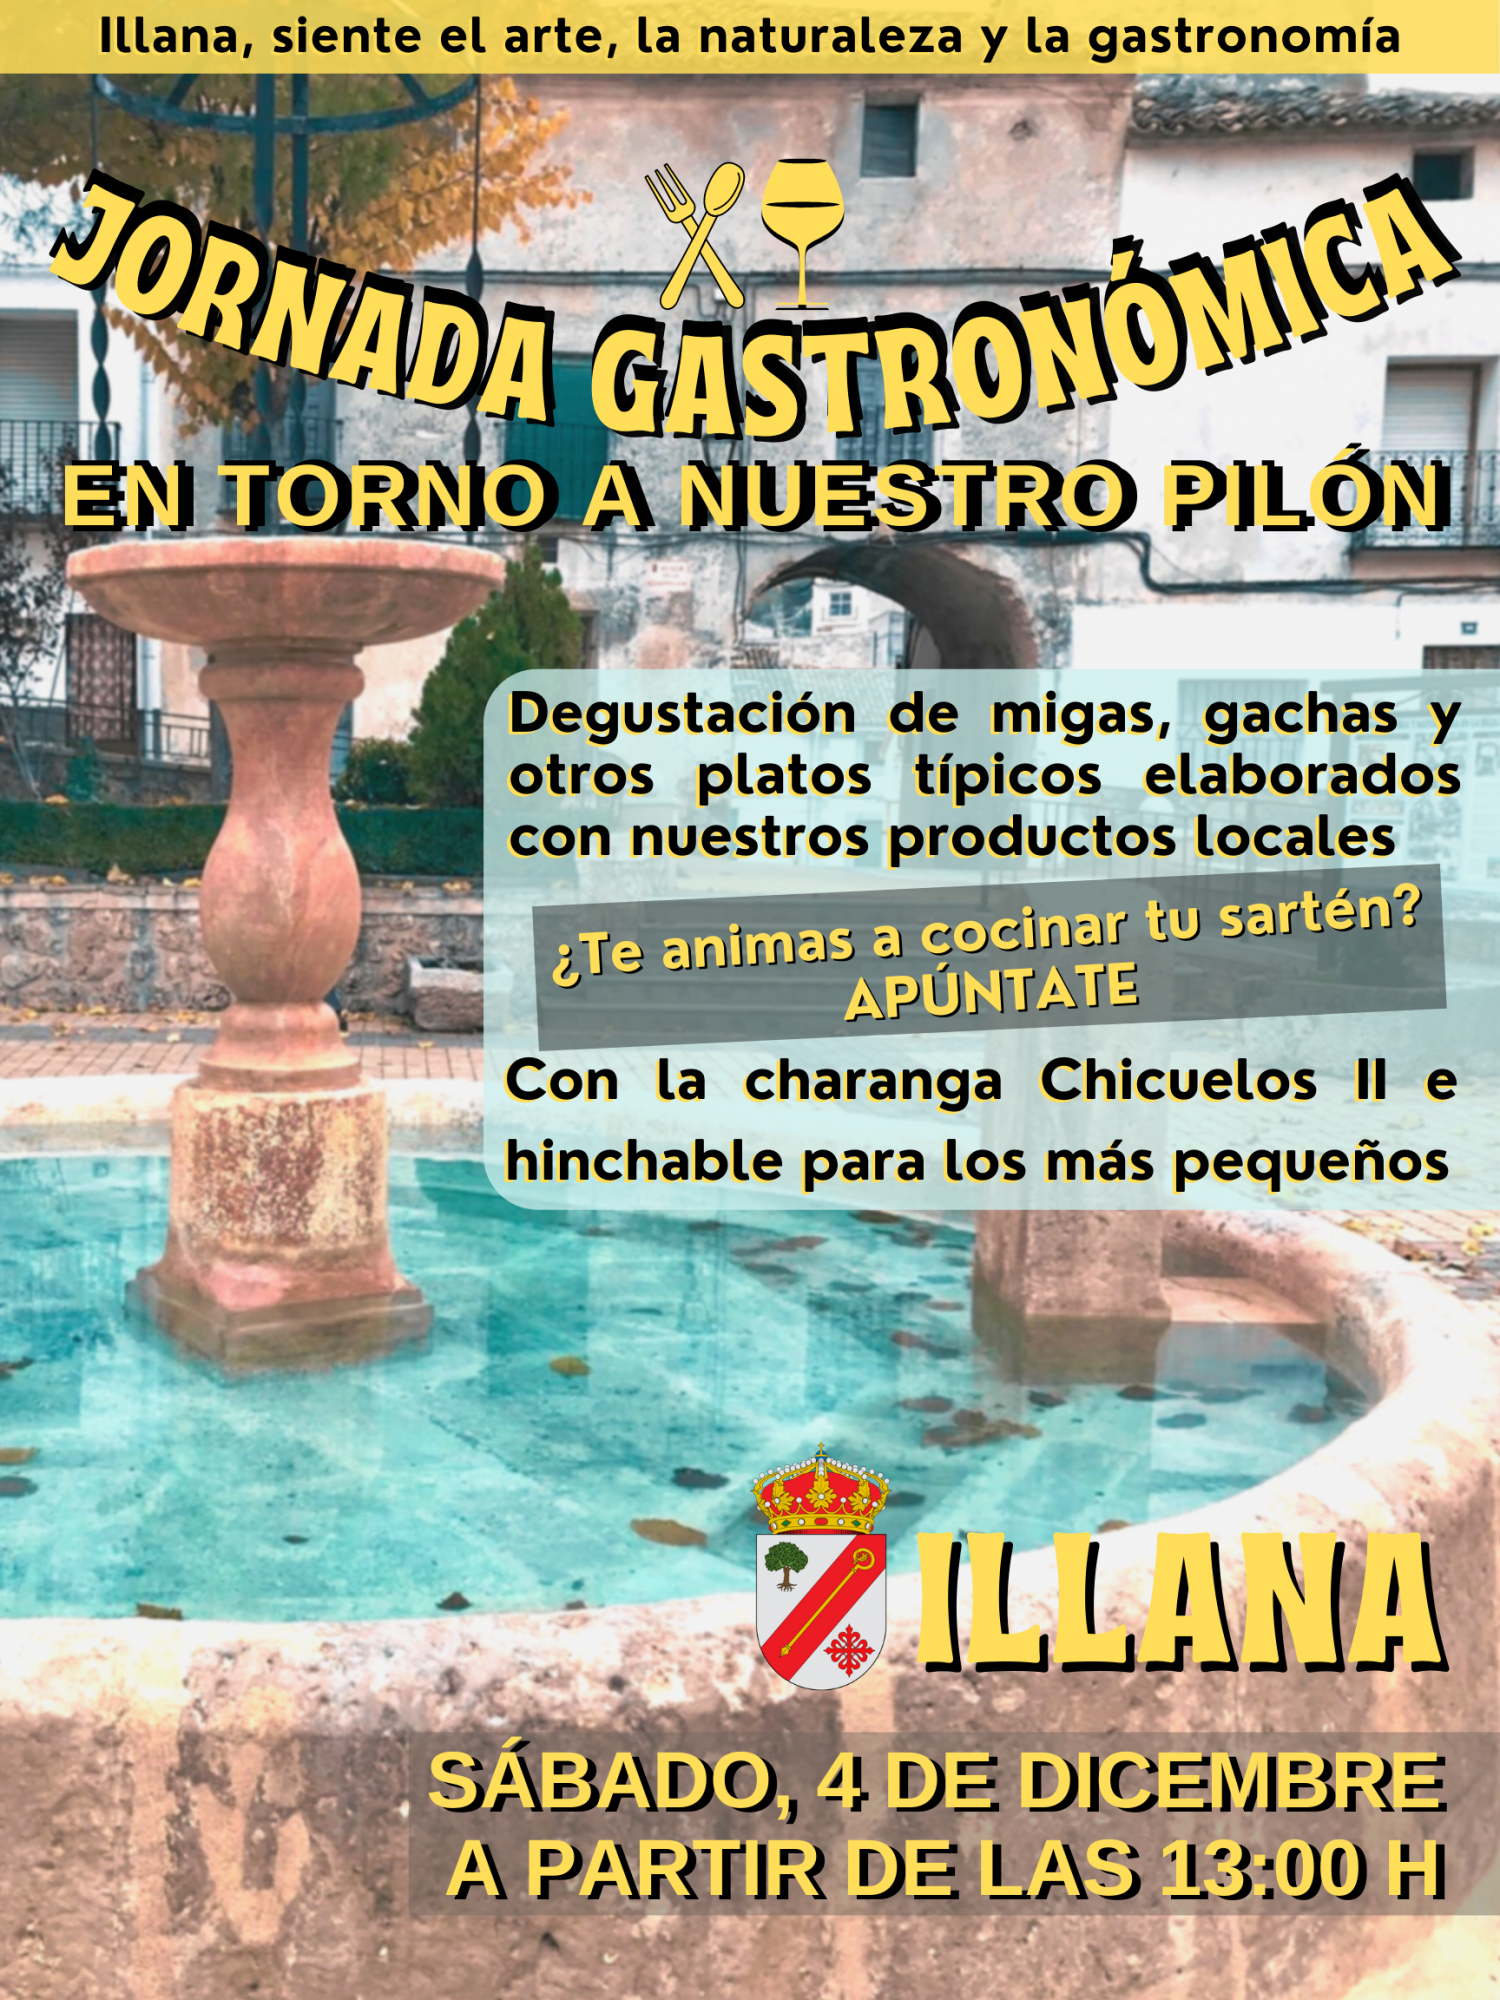 Illana celebrará su ‘jornada gastronómica en torno al Pilón’ durante el puente de la Constitución